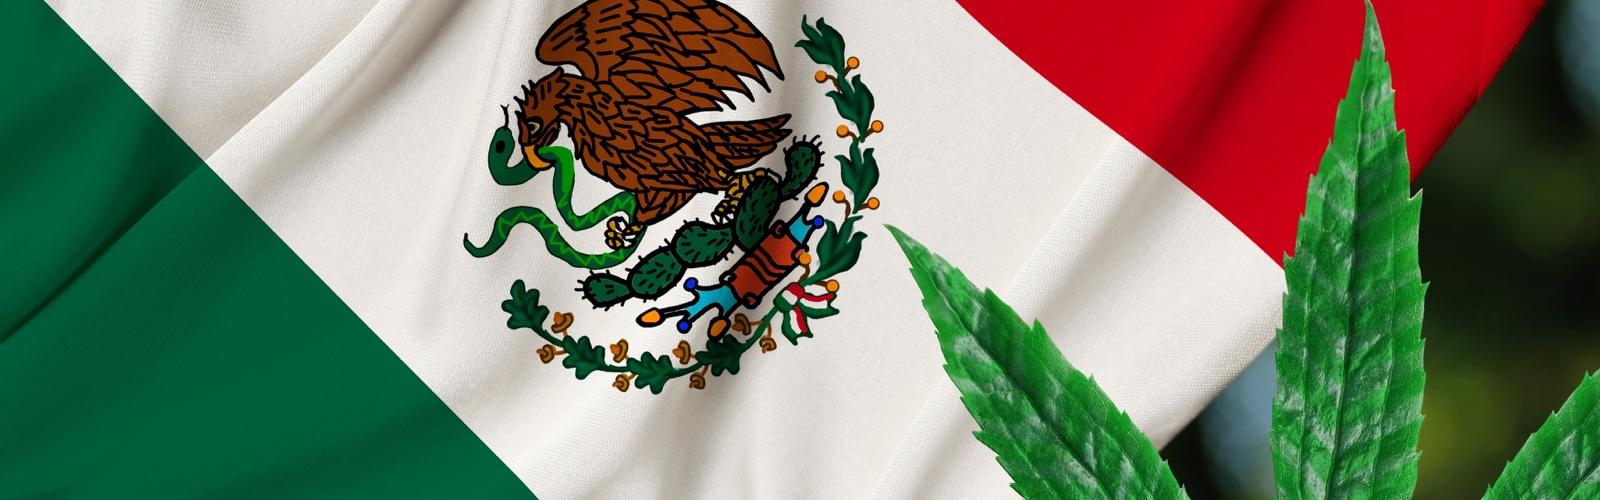 Semillas de Marihuana Mexico